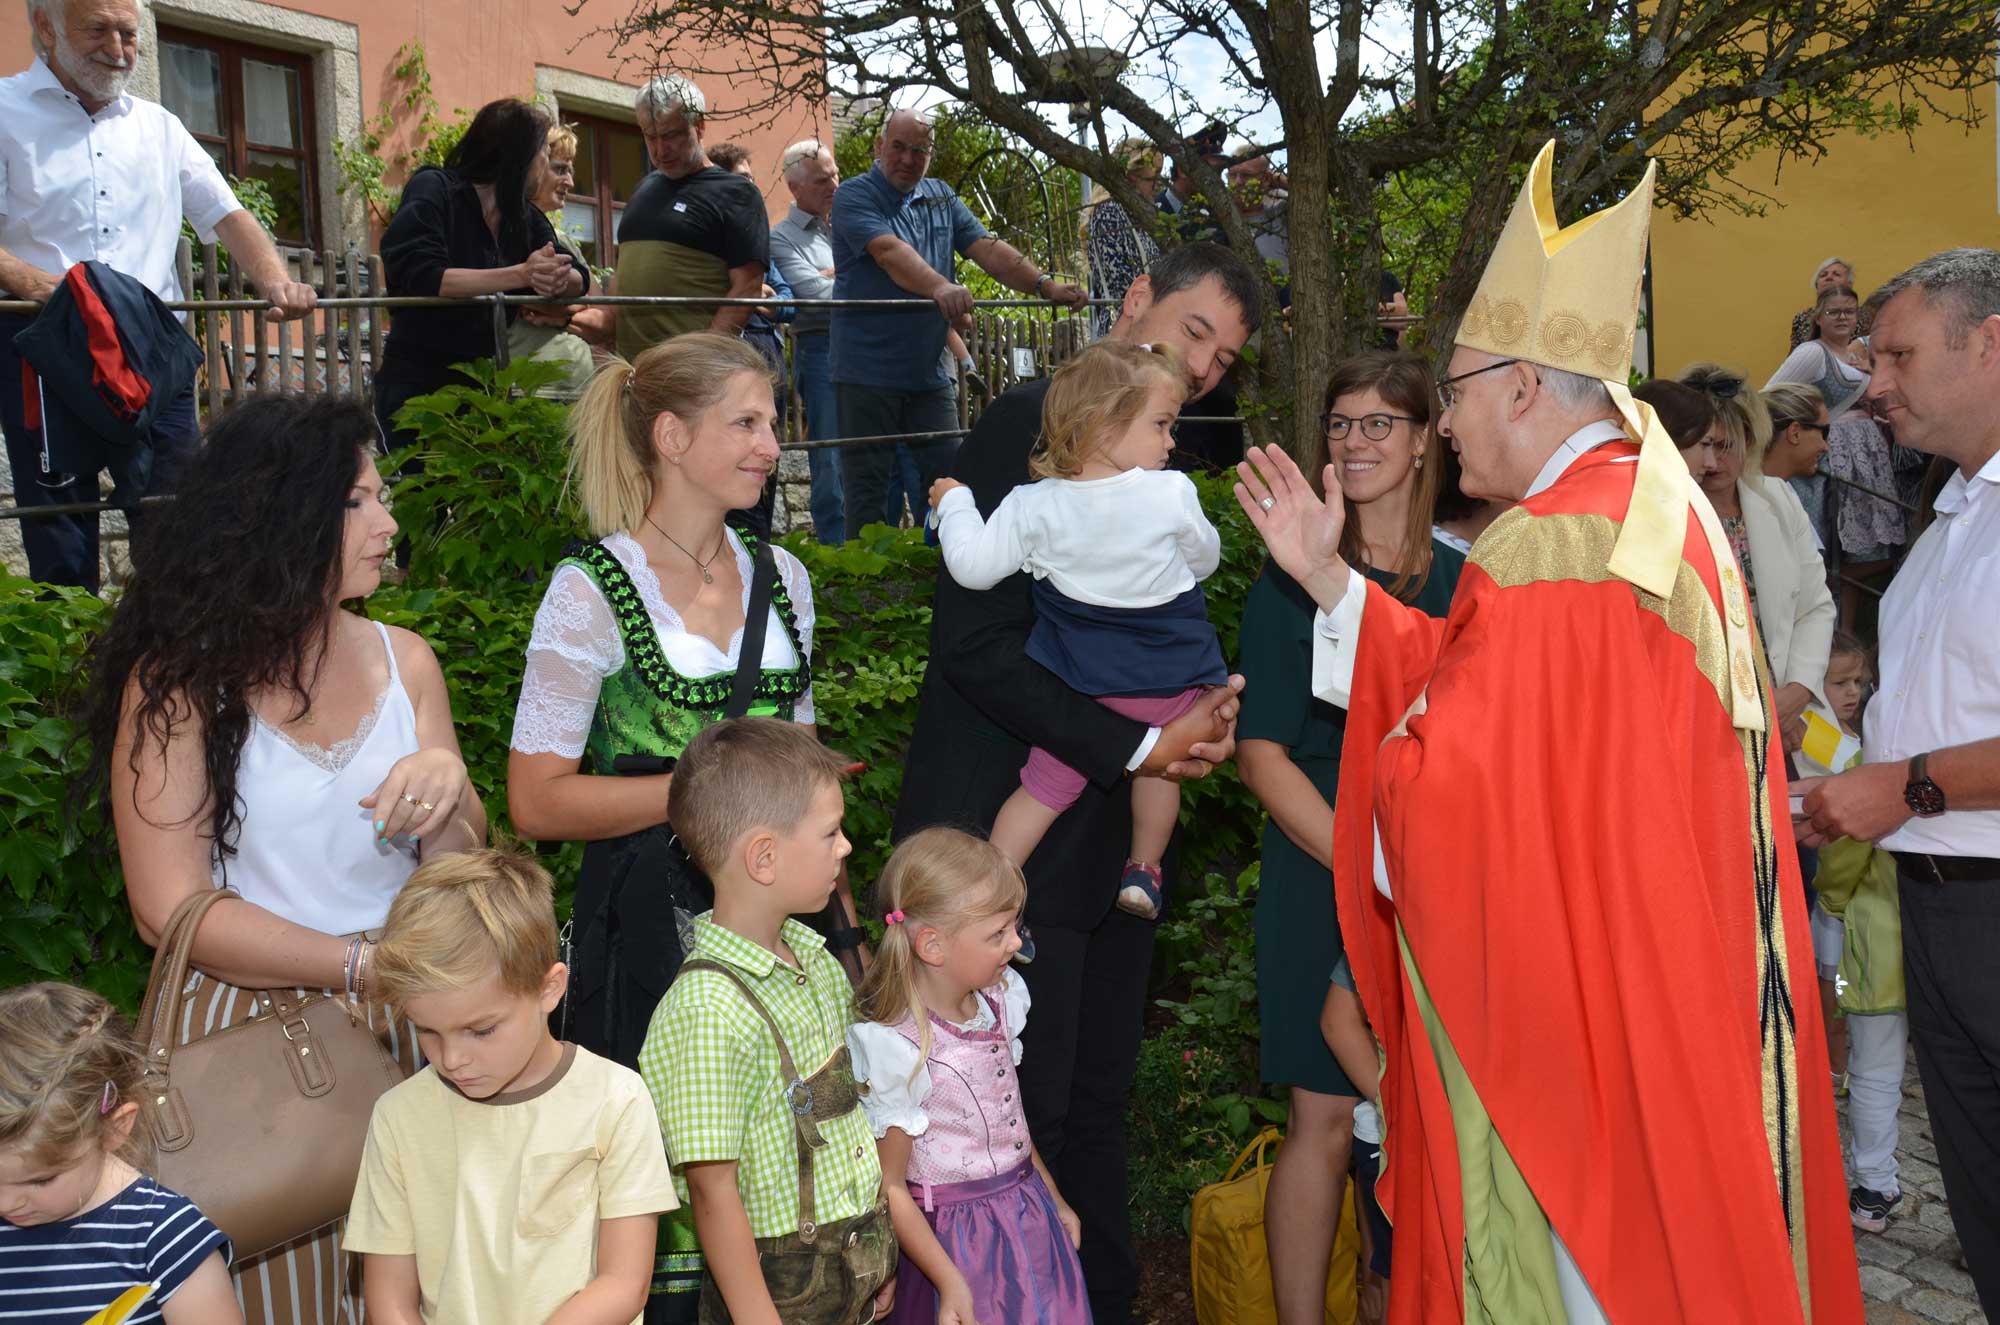 Bischof segnet Kind, umringt von vielen Leuten